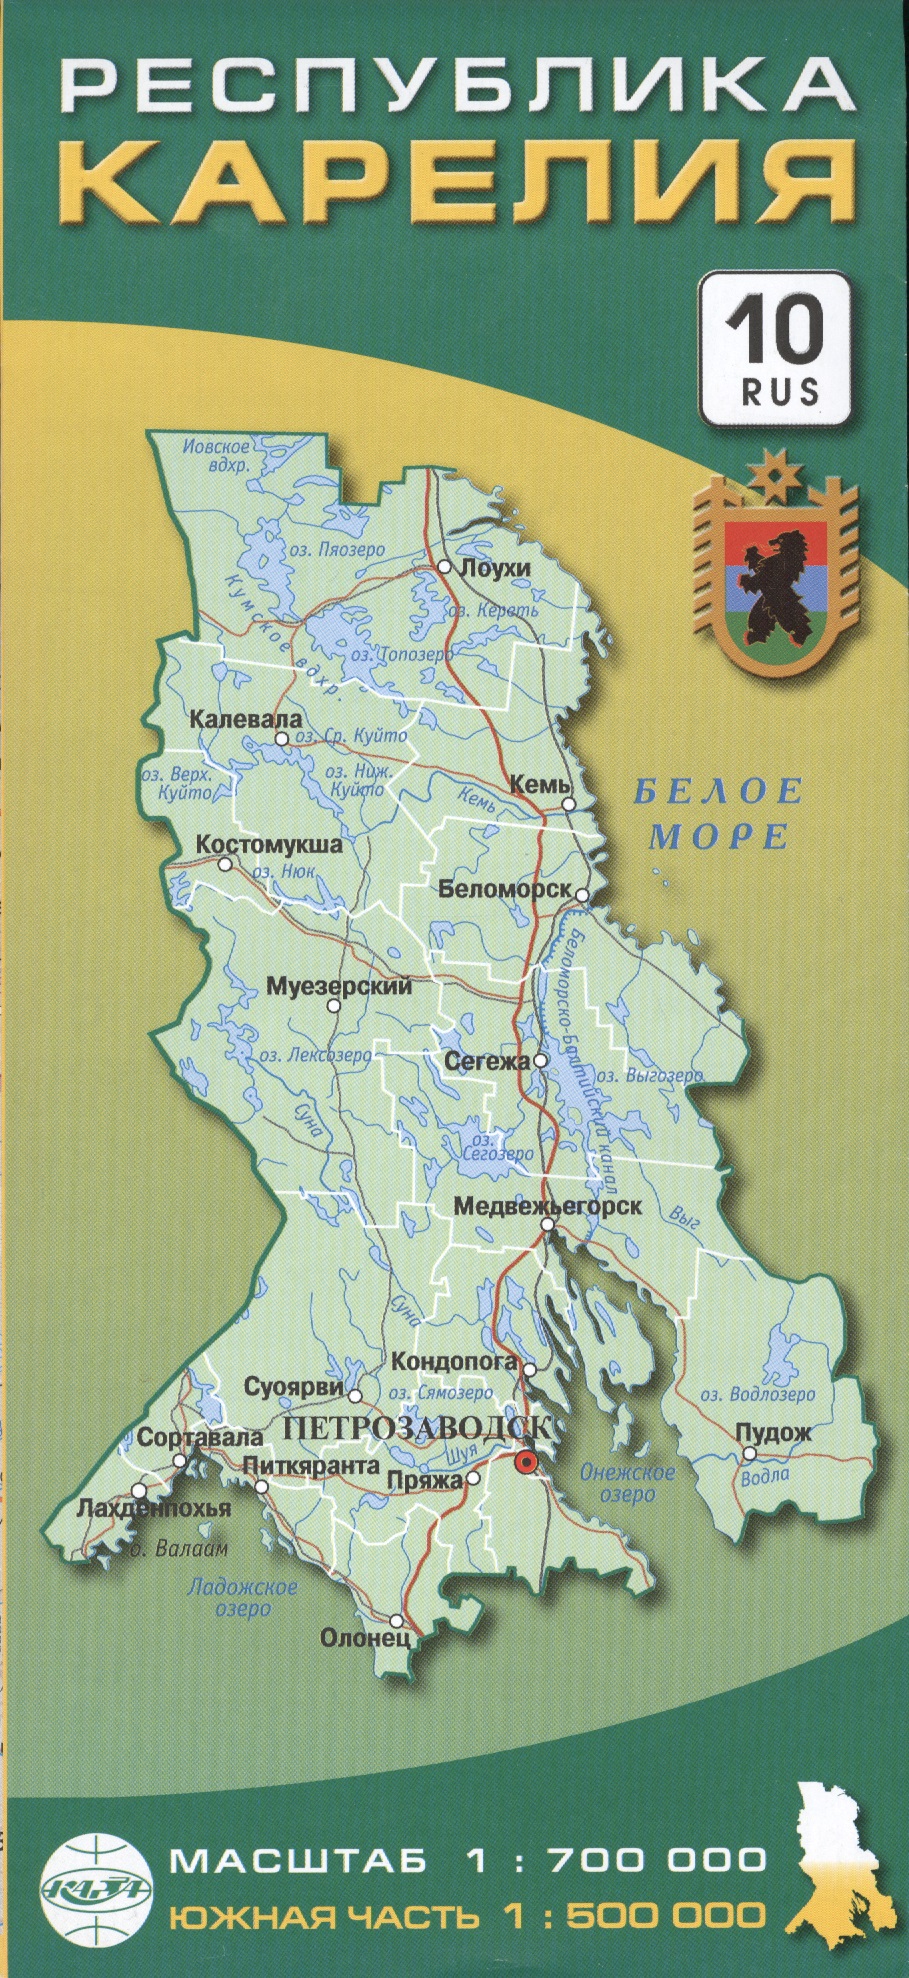 Карта Республика Карелия 1:700тыс.,южная часть 1:500тыс. атлас карелия центральная часть